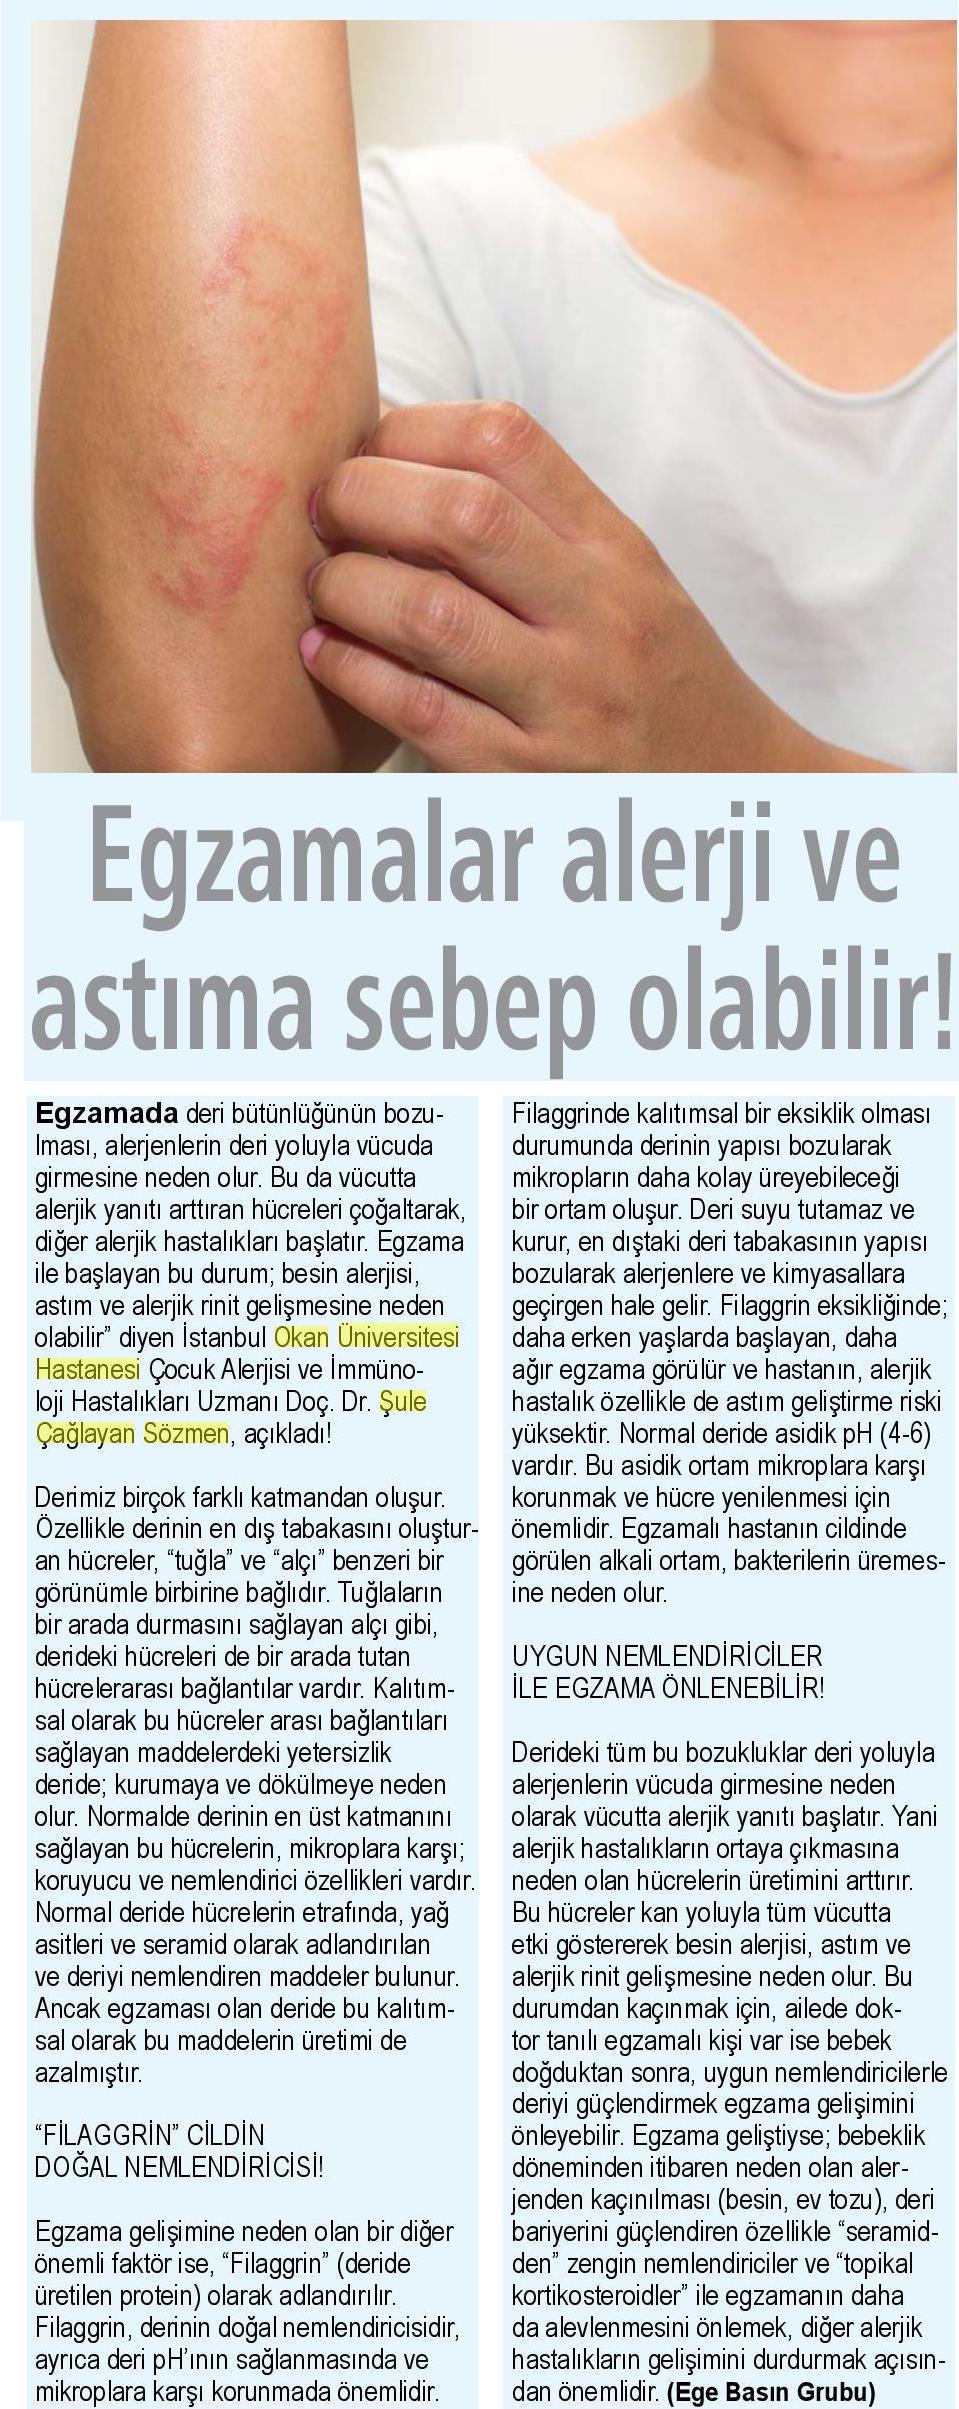 23.04.2019 Sağlık Gazetesi EGZAMALAR ALERJİ VE ASTIMA SEBEP OLABİLİR!